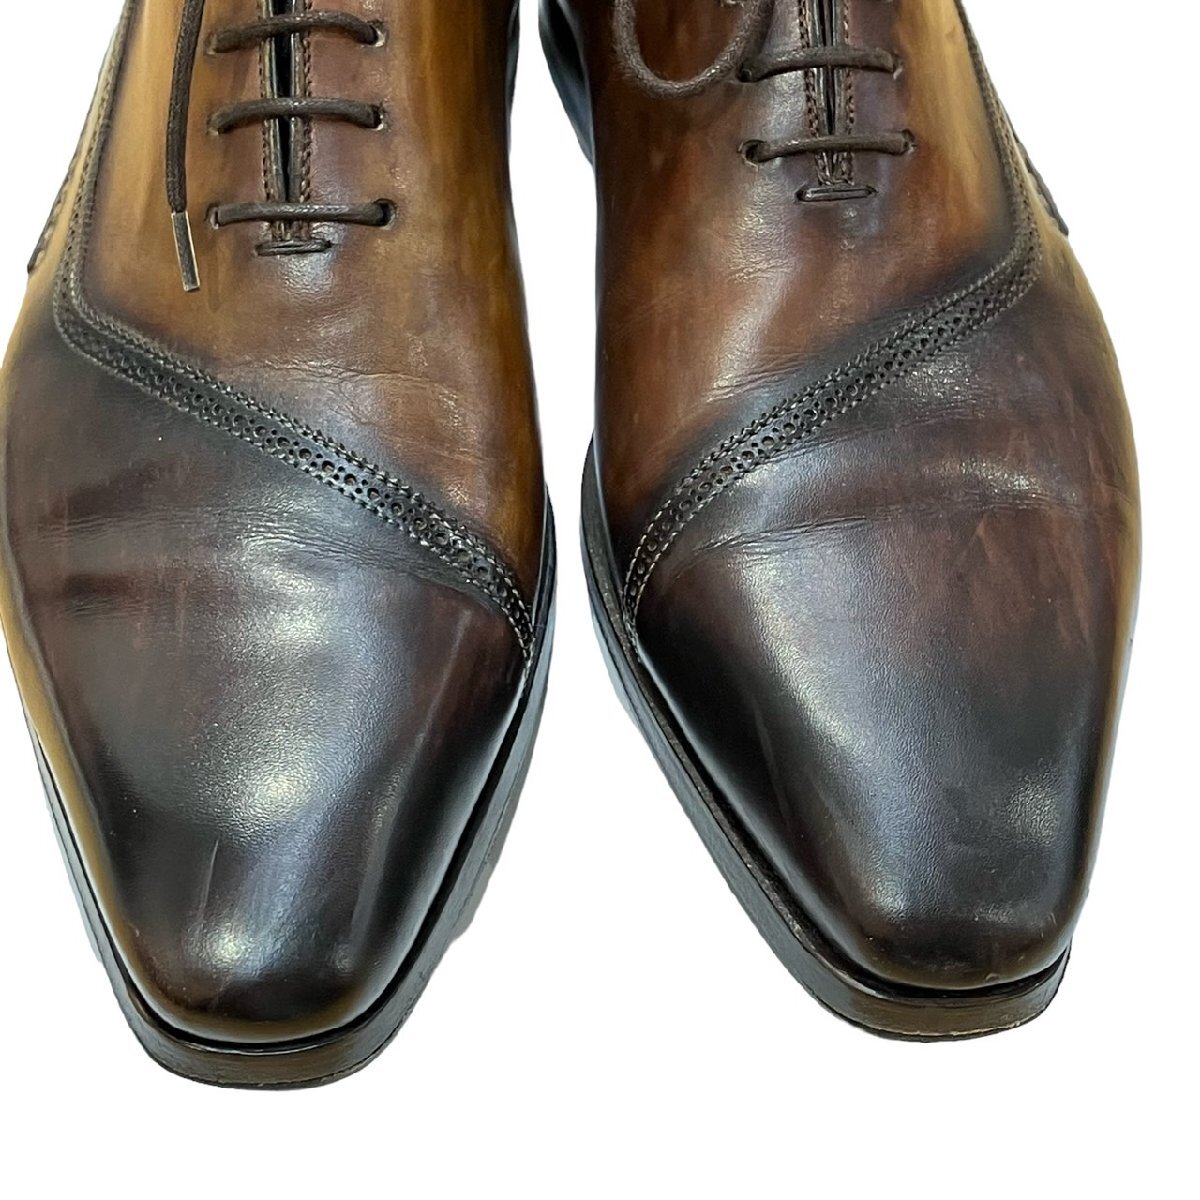 マグナーニ MAGNANNI オパンカ ホールカット ブラウン 革靴 スペイン製 18735 38 箱・保存袋付_画像6